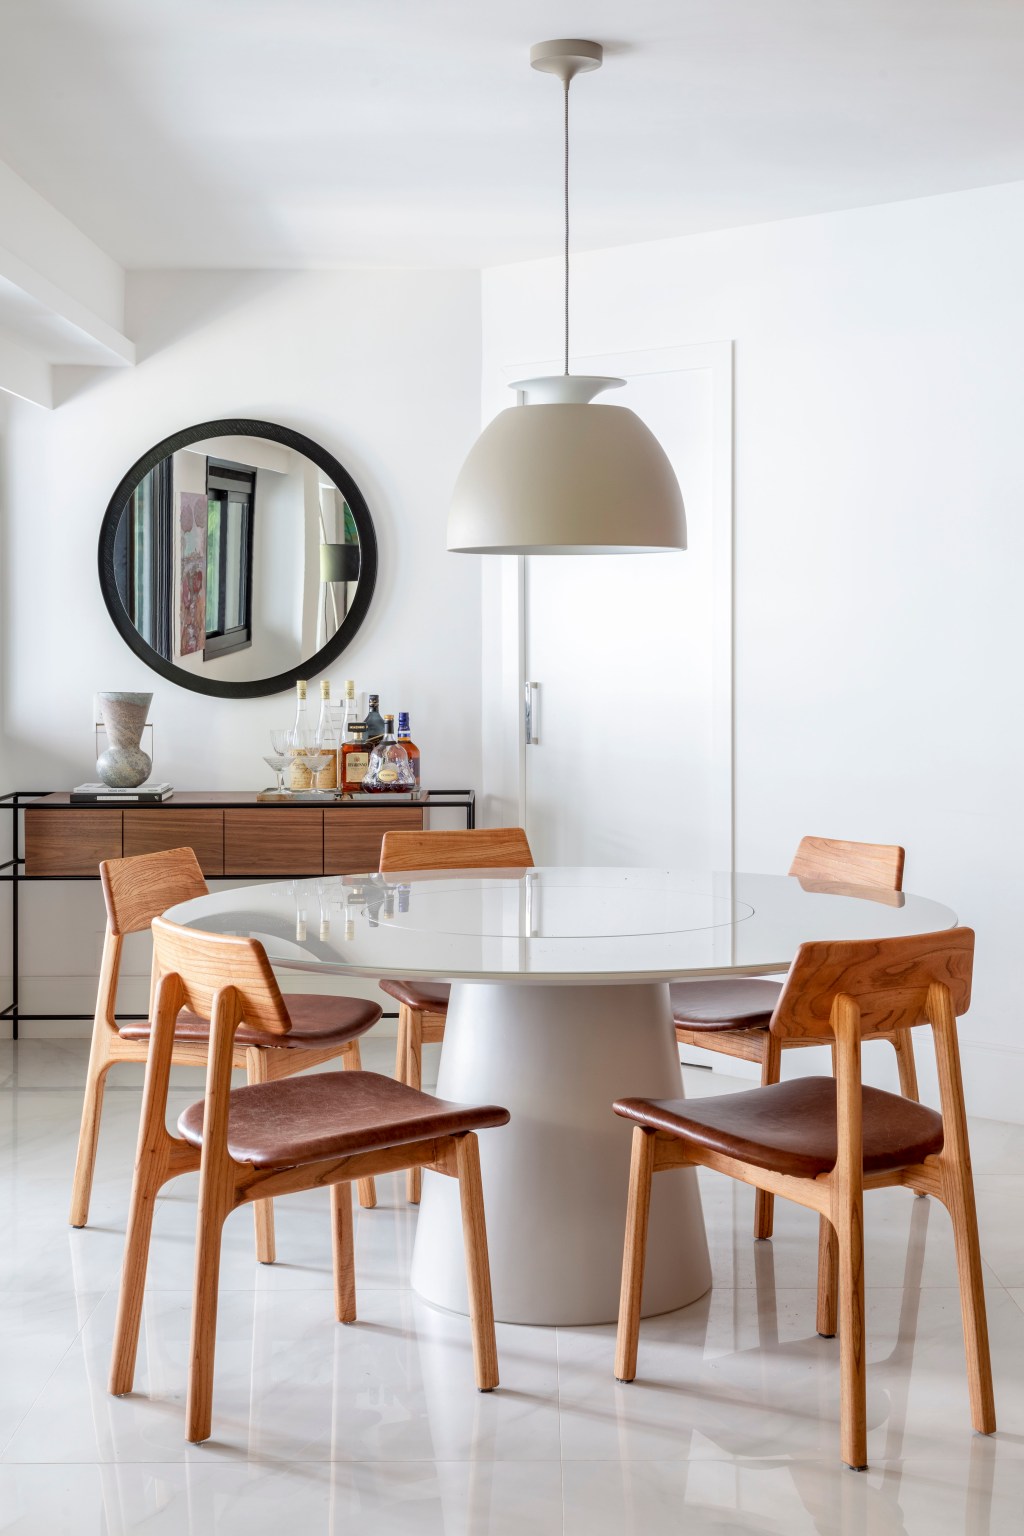 Apartamento 210 m2 décor contemporâneo despojado toques industriais João Panaggio decoração sala jantar mesa cadeira luminaria